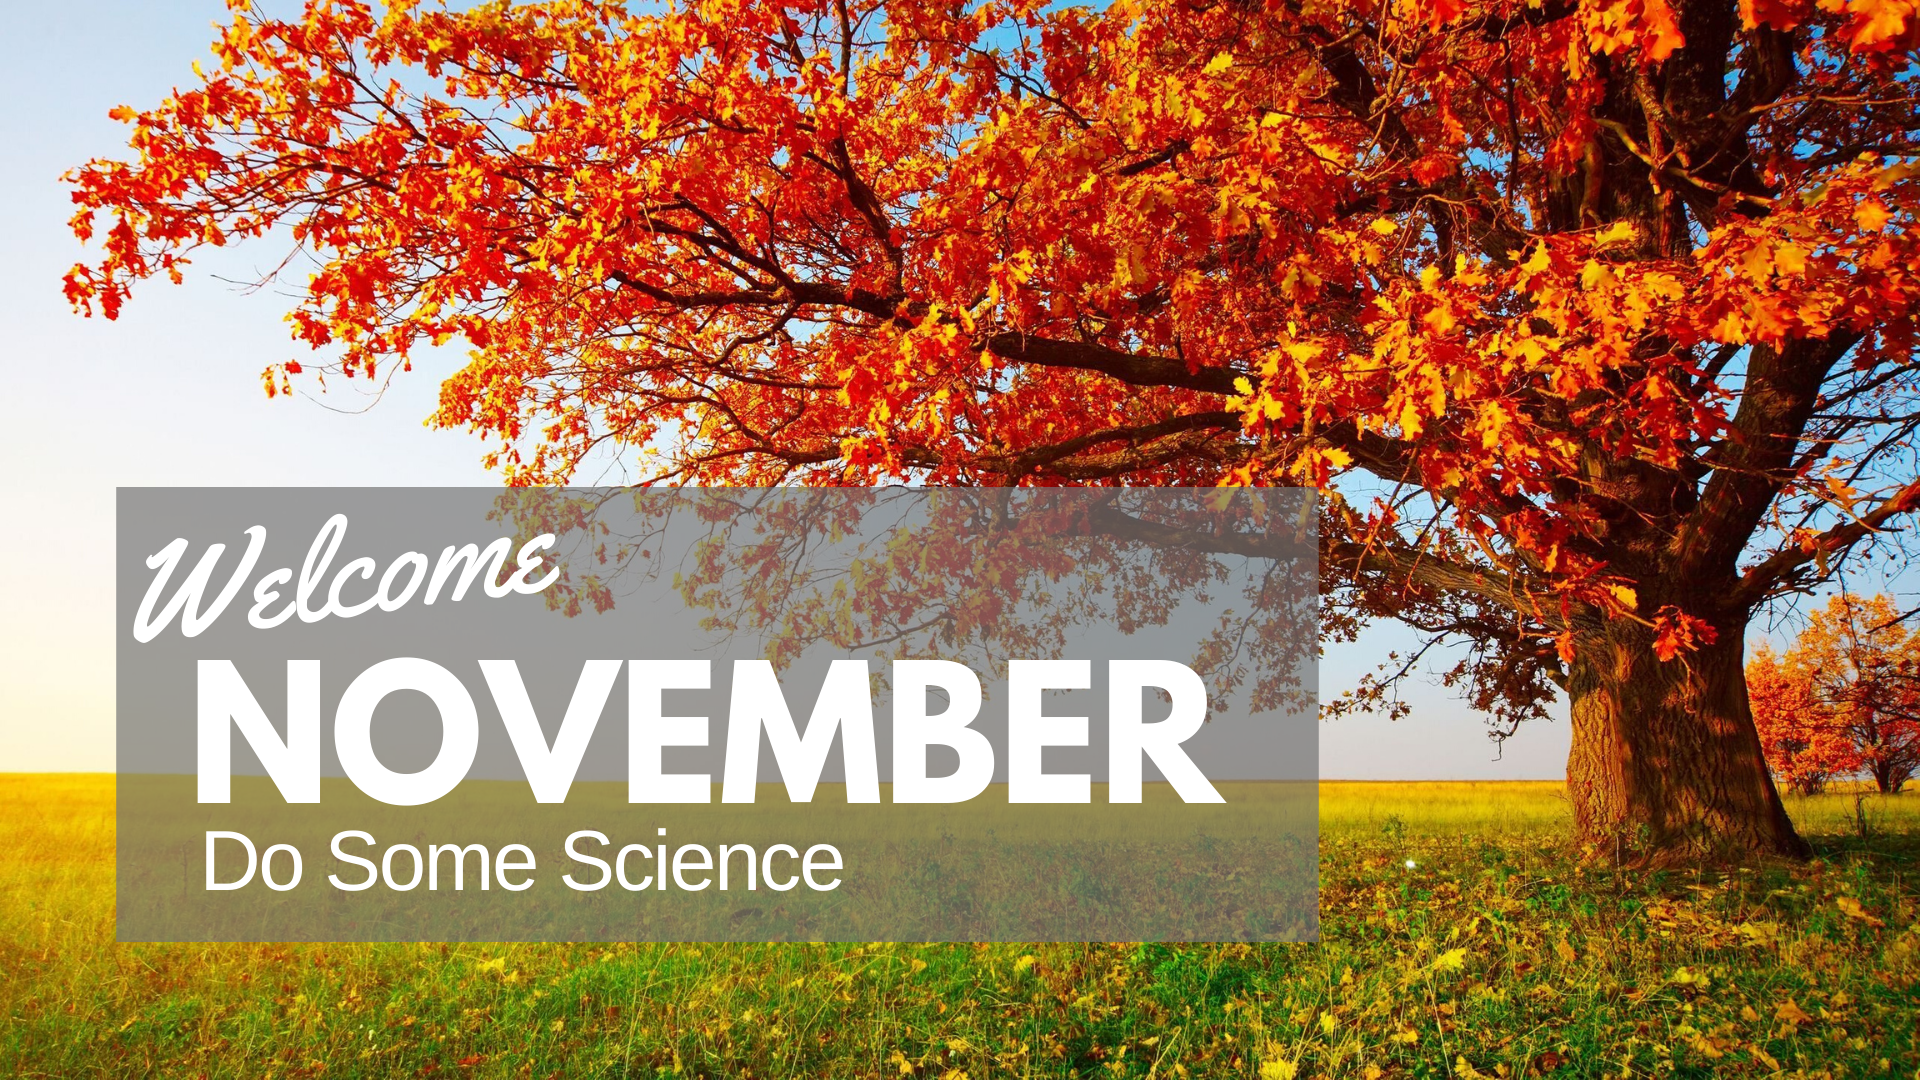 Do Some Science In November